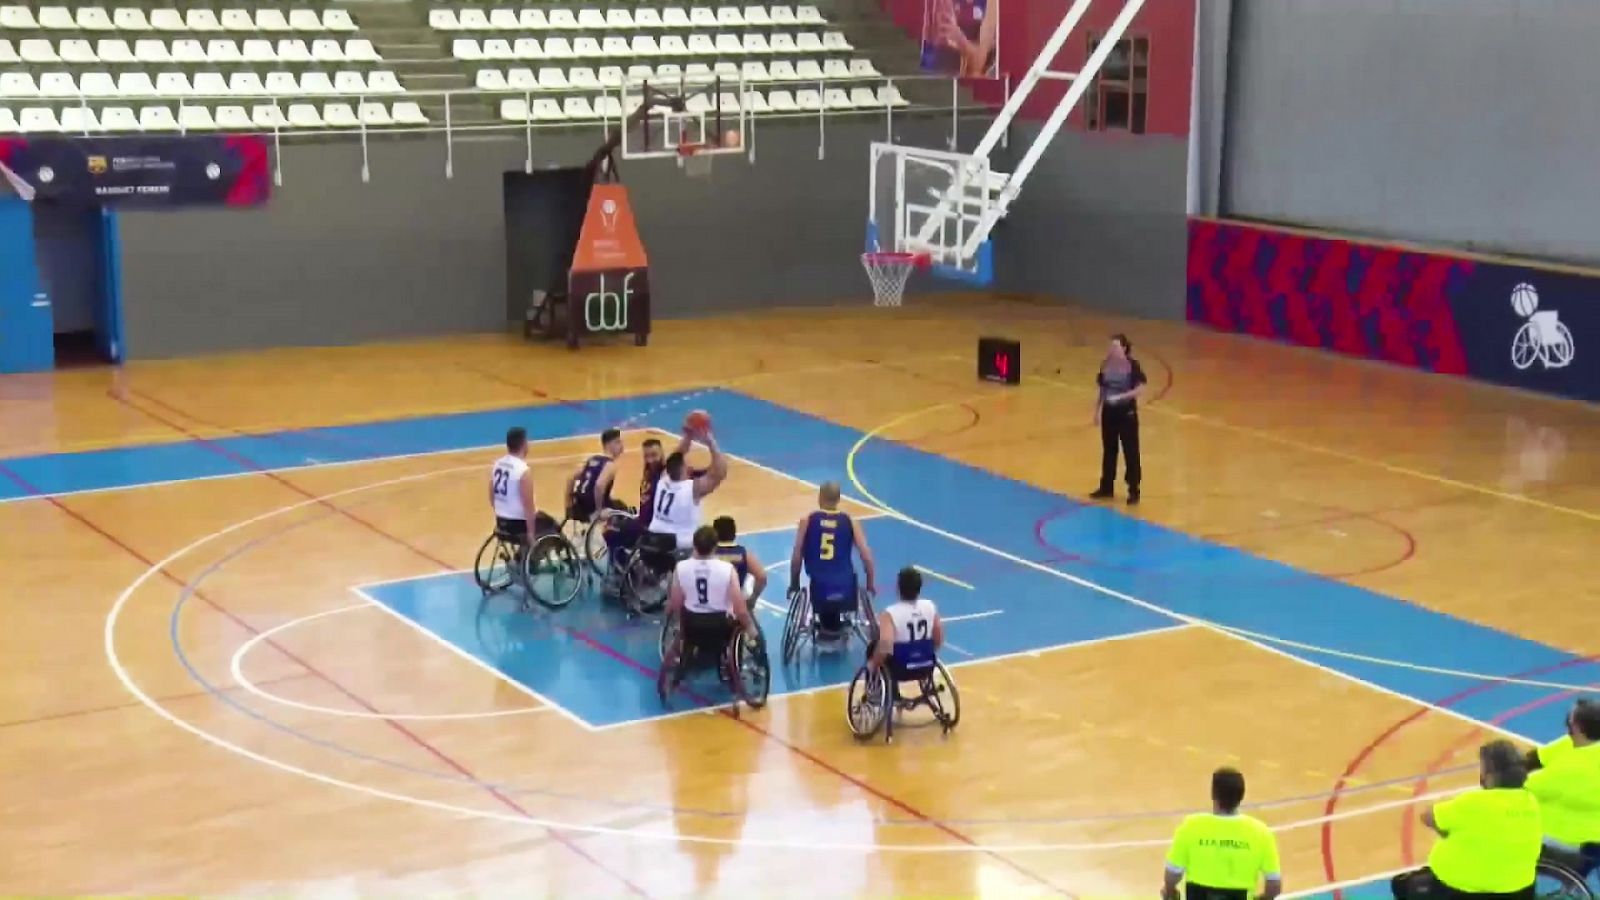 Baloncesto en silla de ruedas - Liga BSR división de Honor. Resumen jornada 9 - RTVE.es